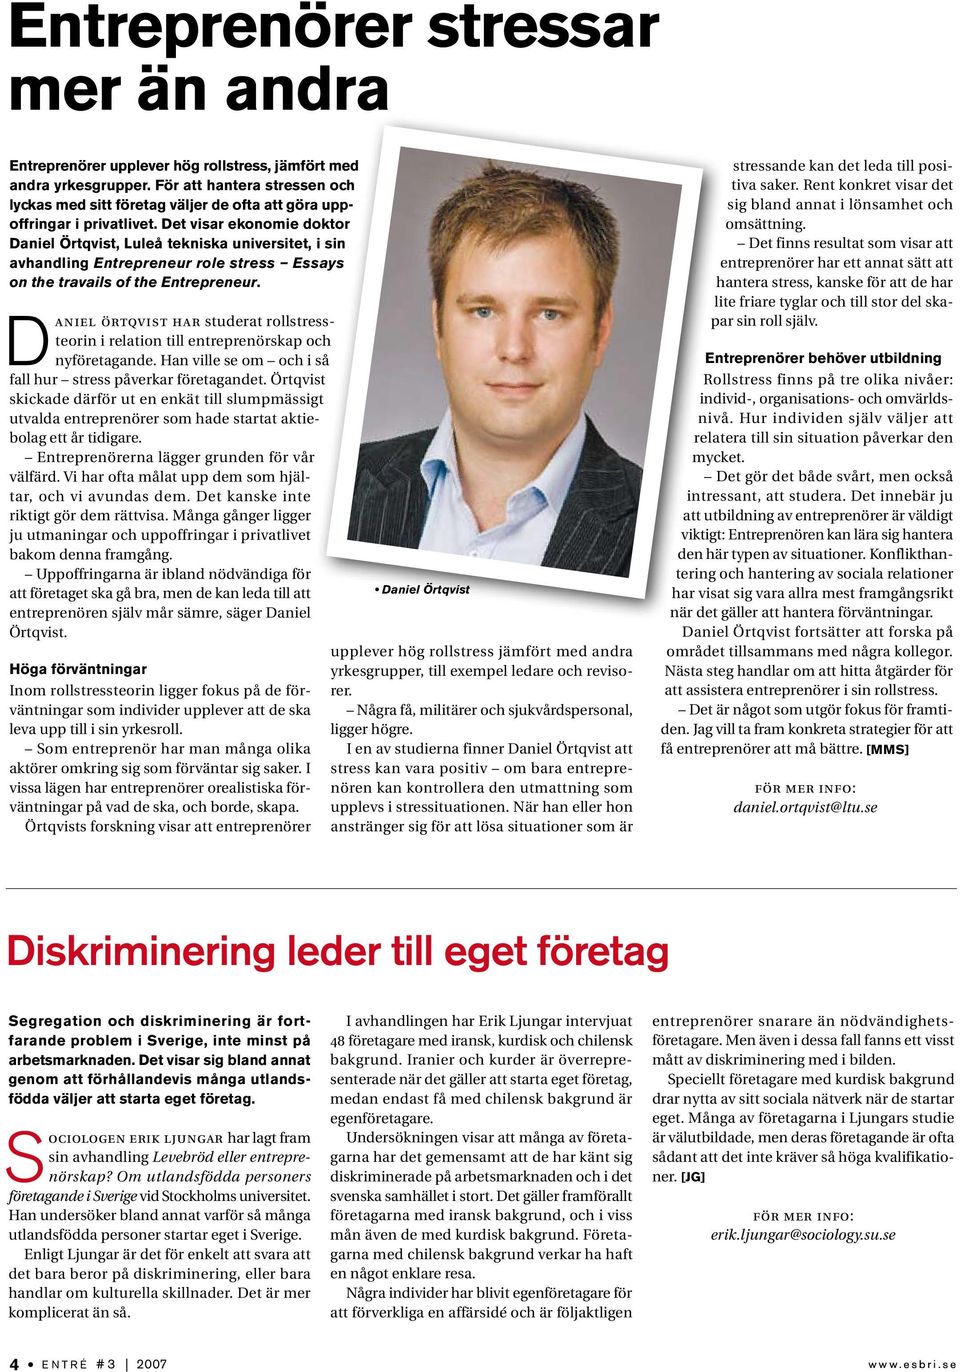 Det visar ekonomie doktor Daniel Örtqvist, Luleå tekniska universitet, i sin avhandling Entrepreneur role stress Essays on the travails of the Entrepreneur.